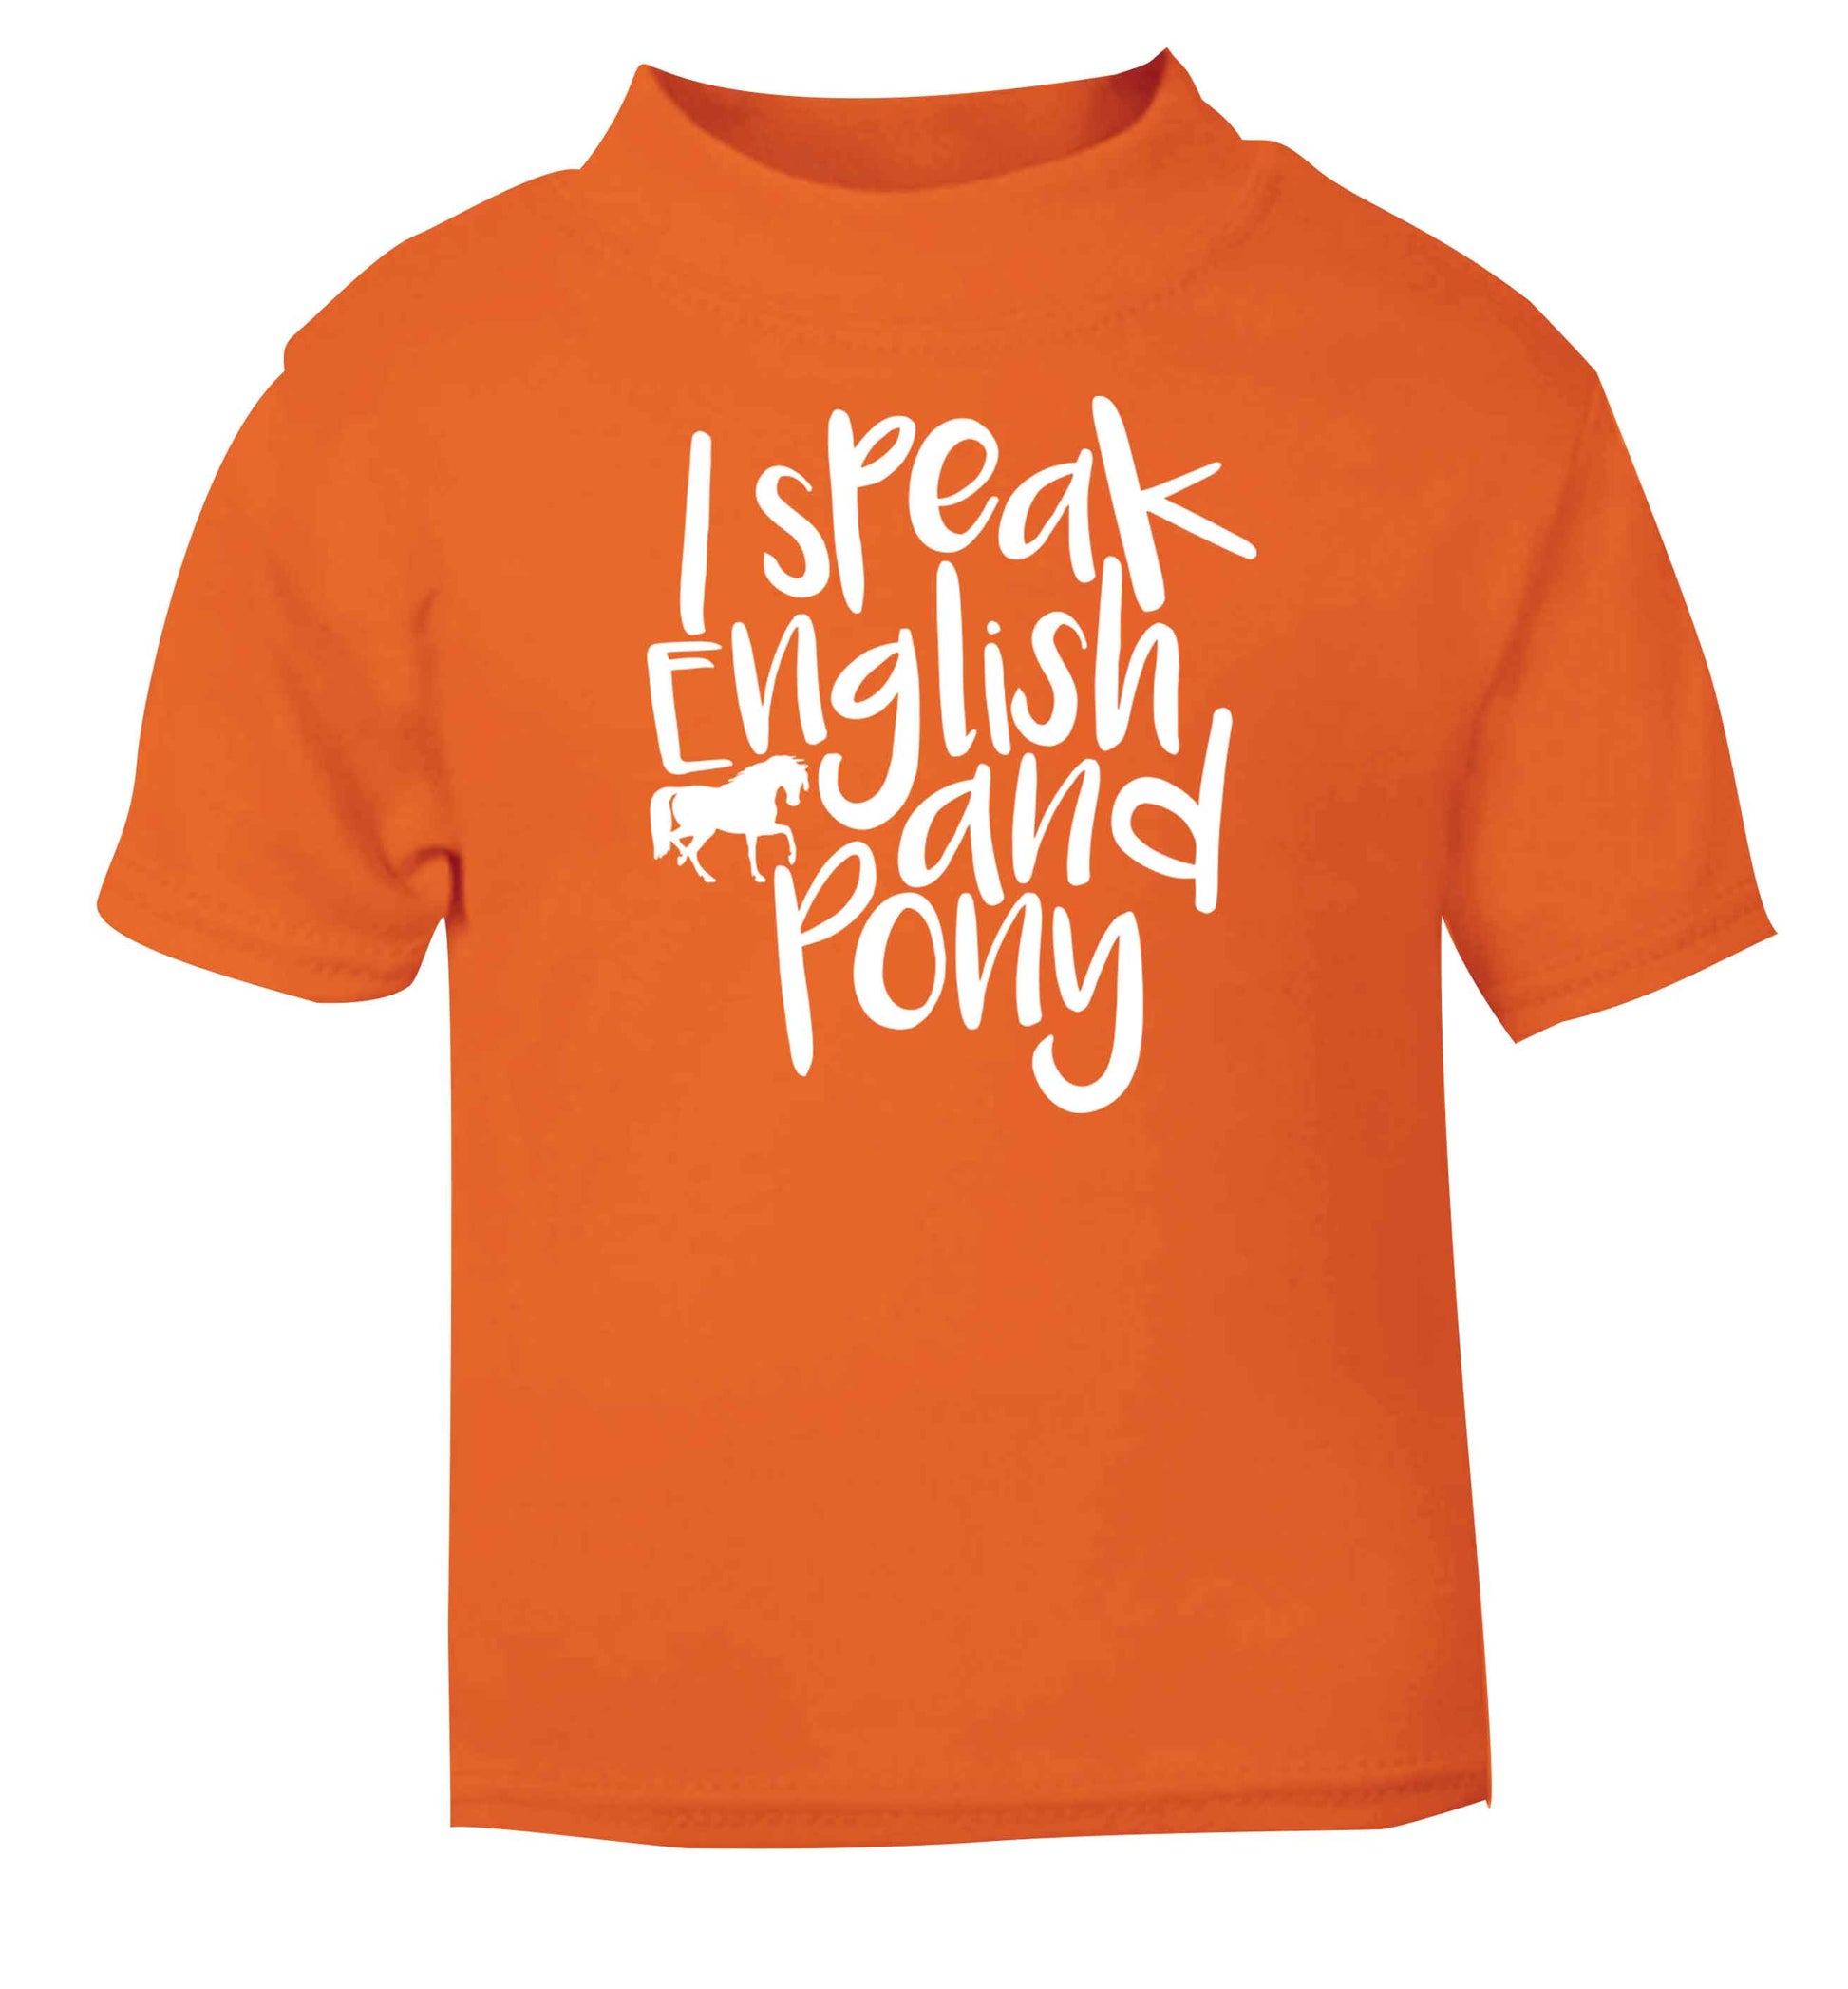 I speak English and pony orange baby toddler Tshirt 2 Years